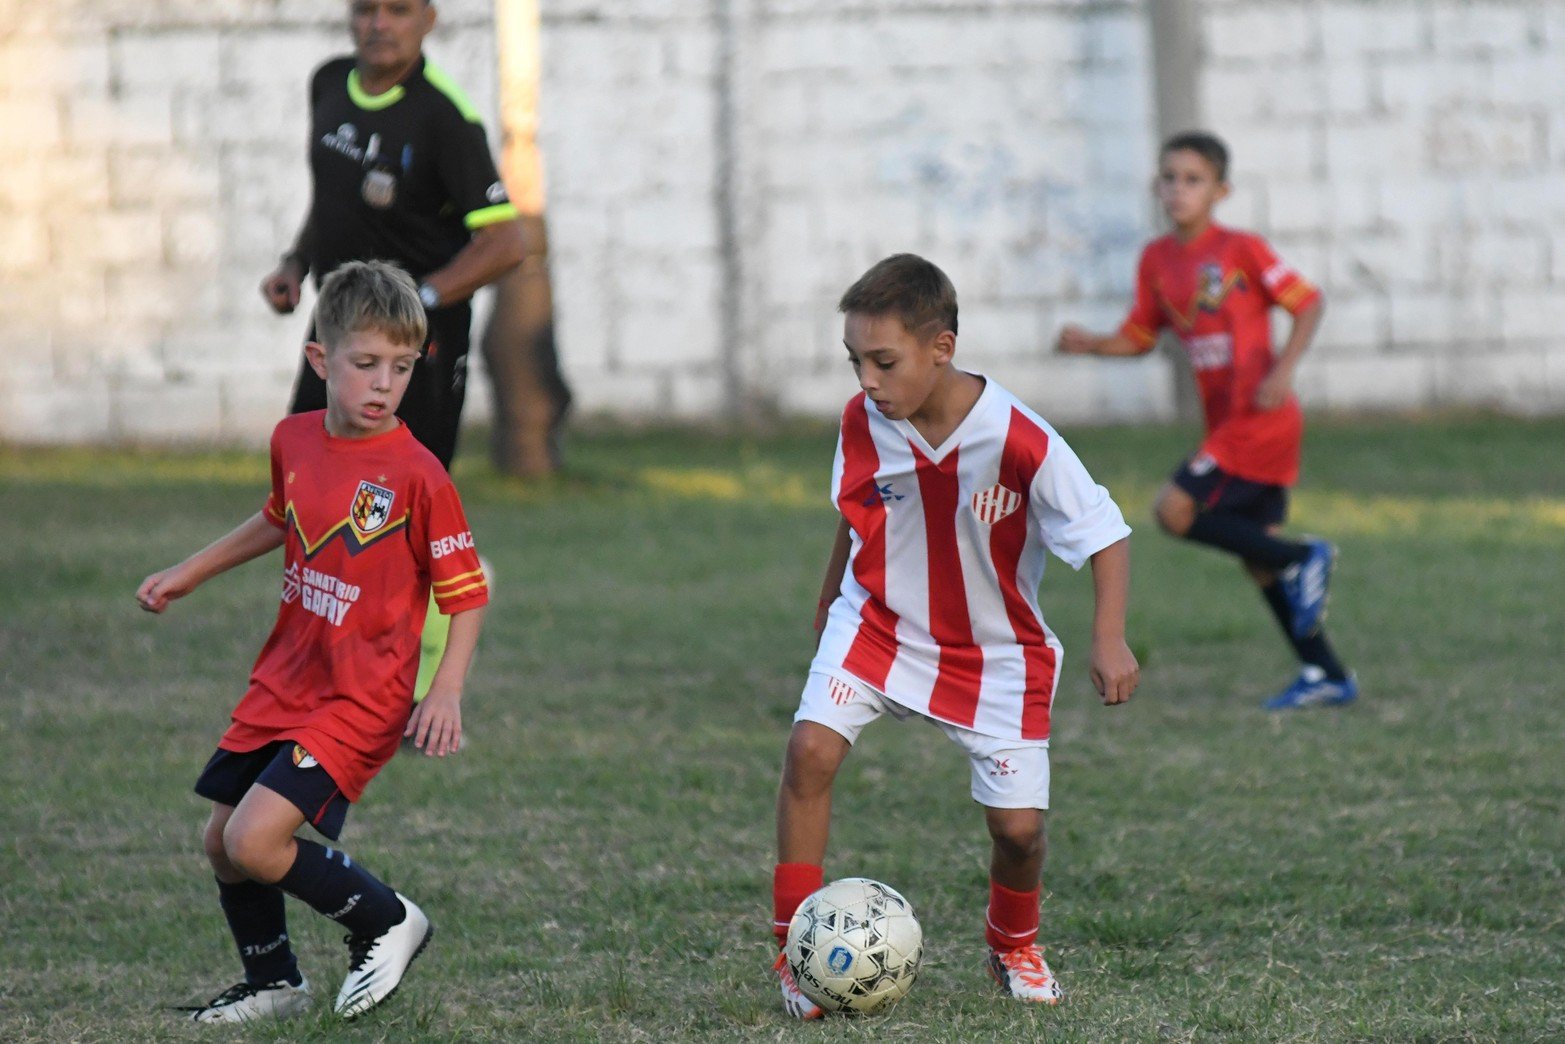 Unión ganó en las tres categorías. El primer torneo infantil  Albos del  Sur  fue organizado por el club Nacional fue un éxito.